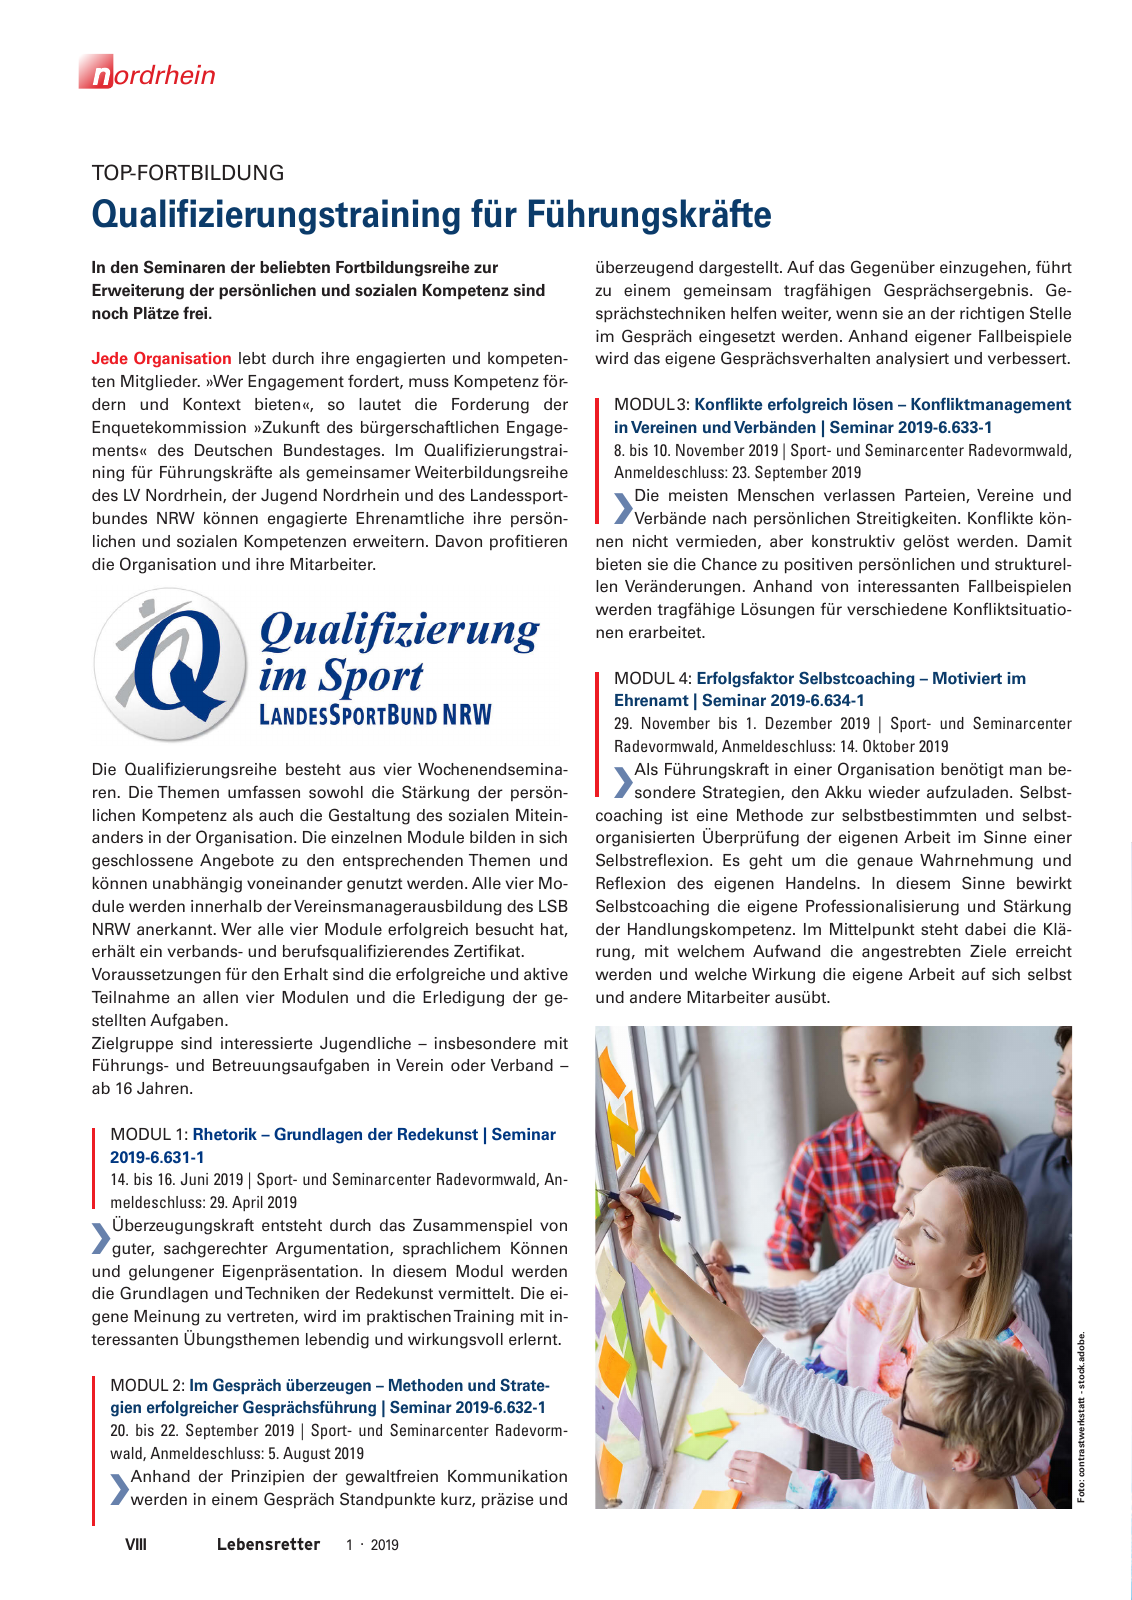 Vorschau Lebensretter 1/2019 –  Regionalausgabe Nordrhein Seite 10